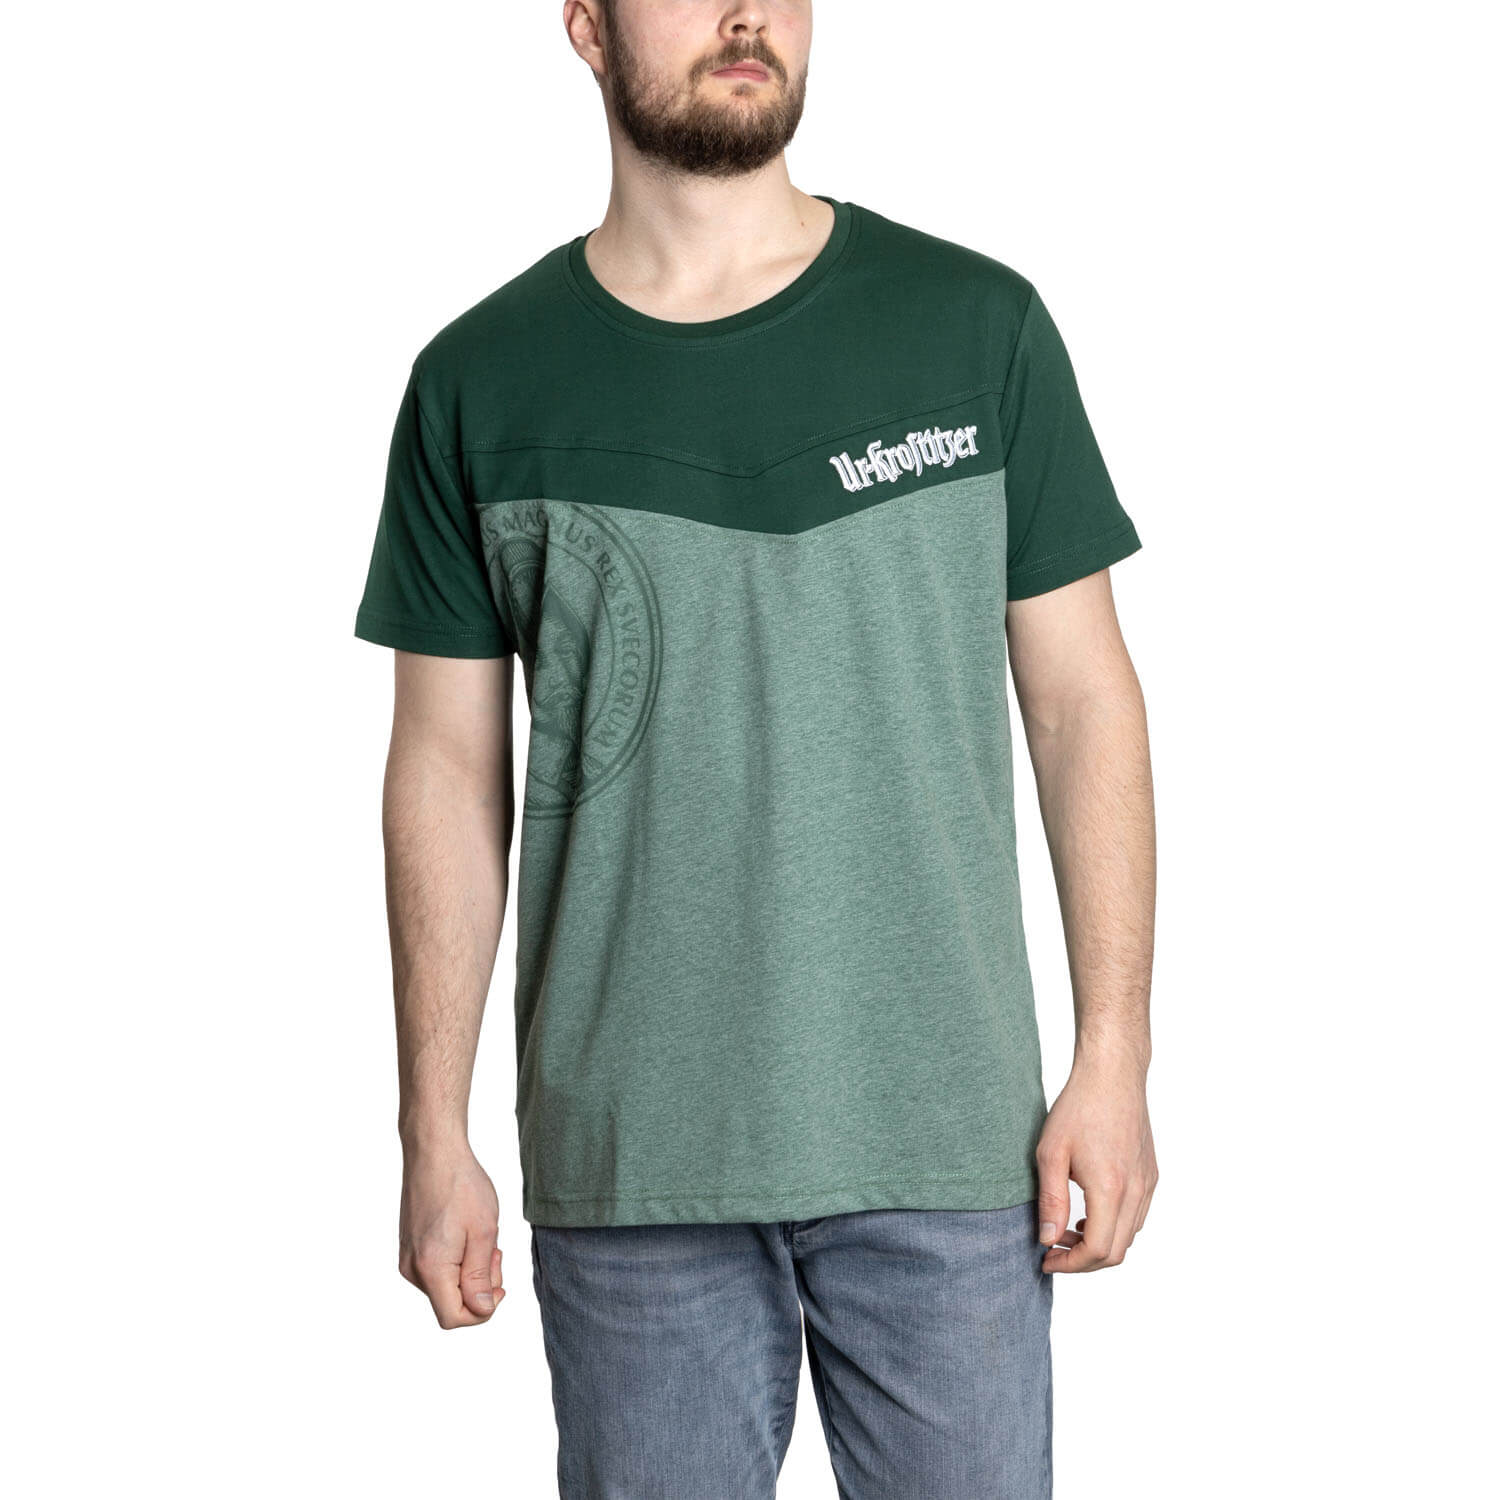 Ur-Krostitzer Green Edition T-Shirt Herren